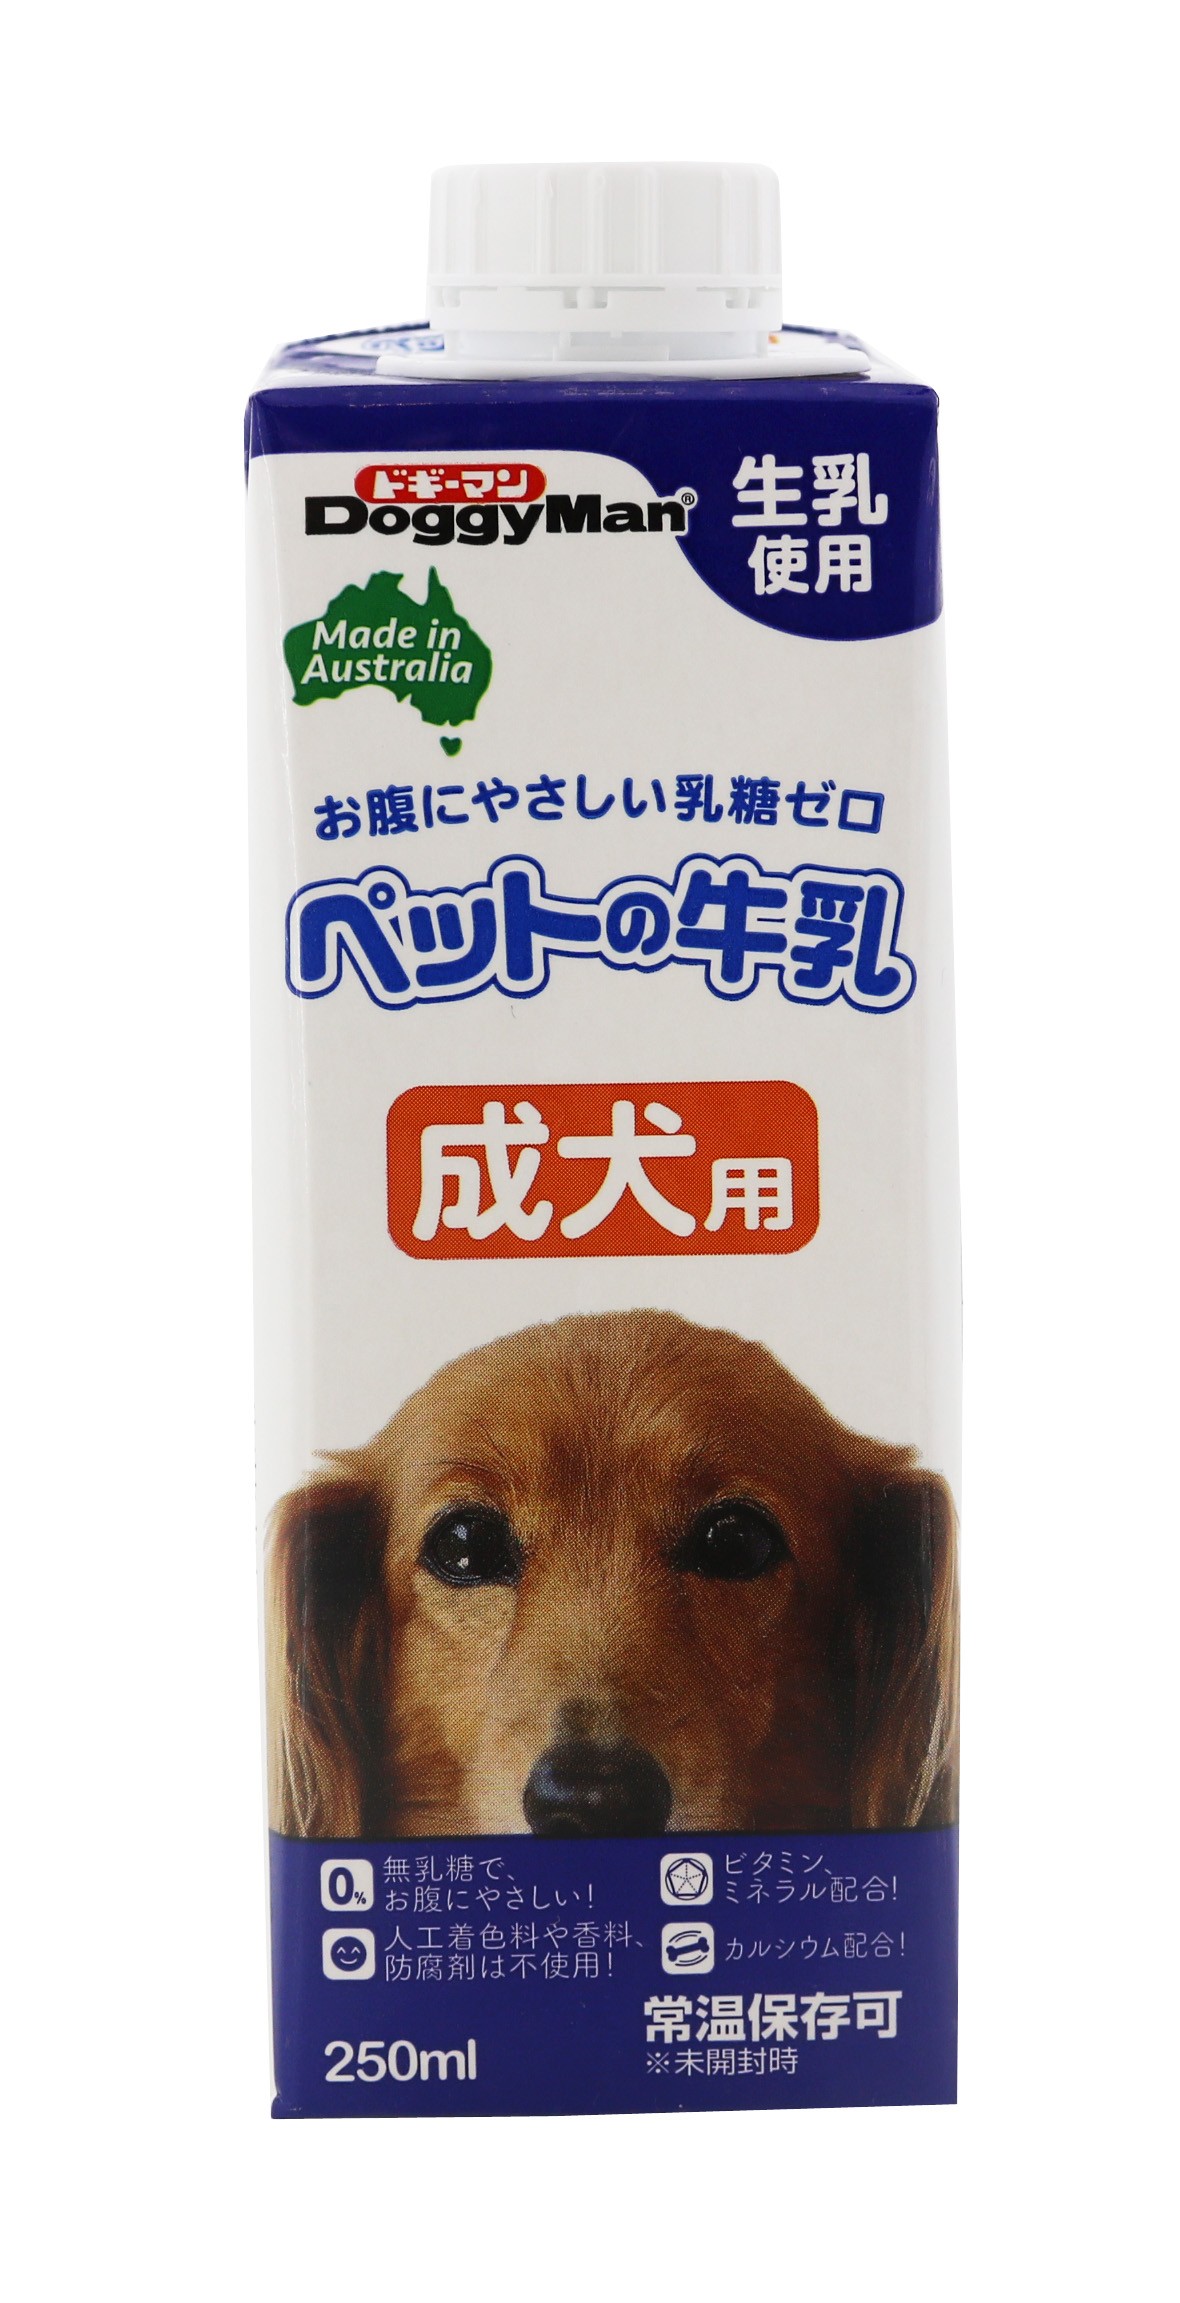 ドギーマン ペットの牛乳 成犬用 250ml 1ケース24個セット 通販